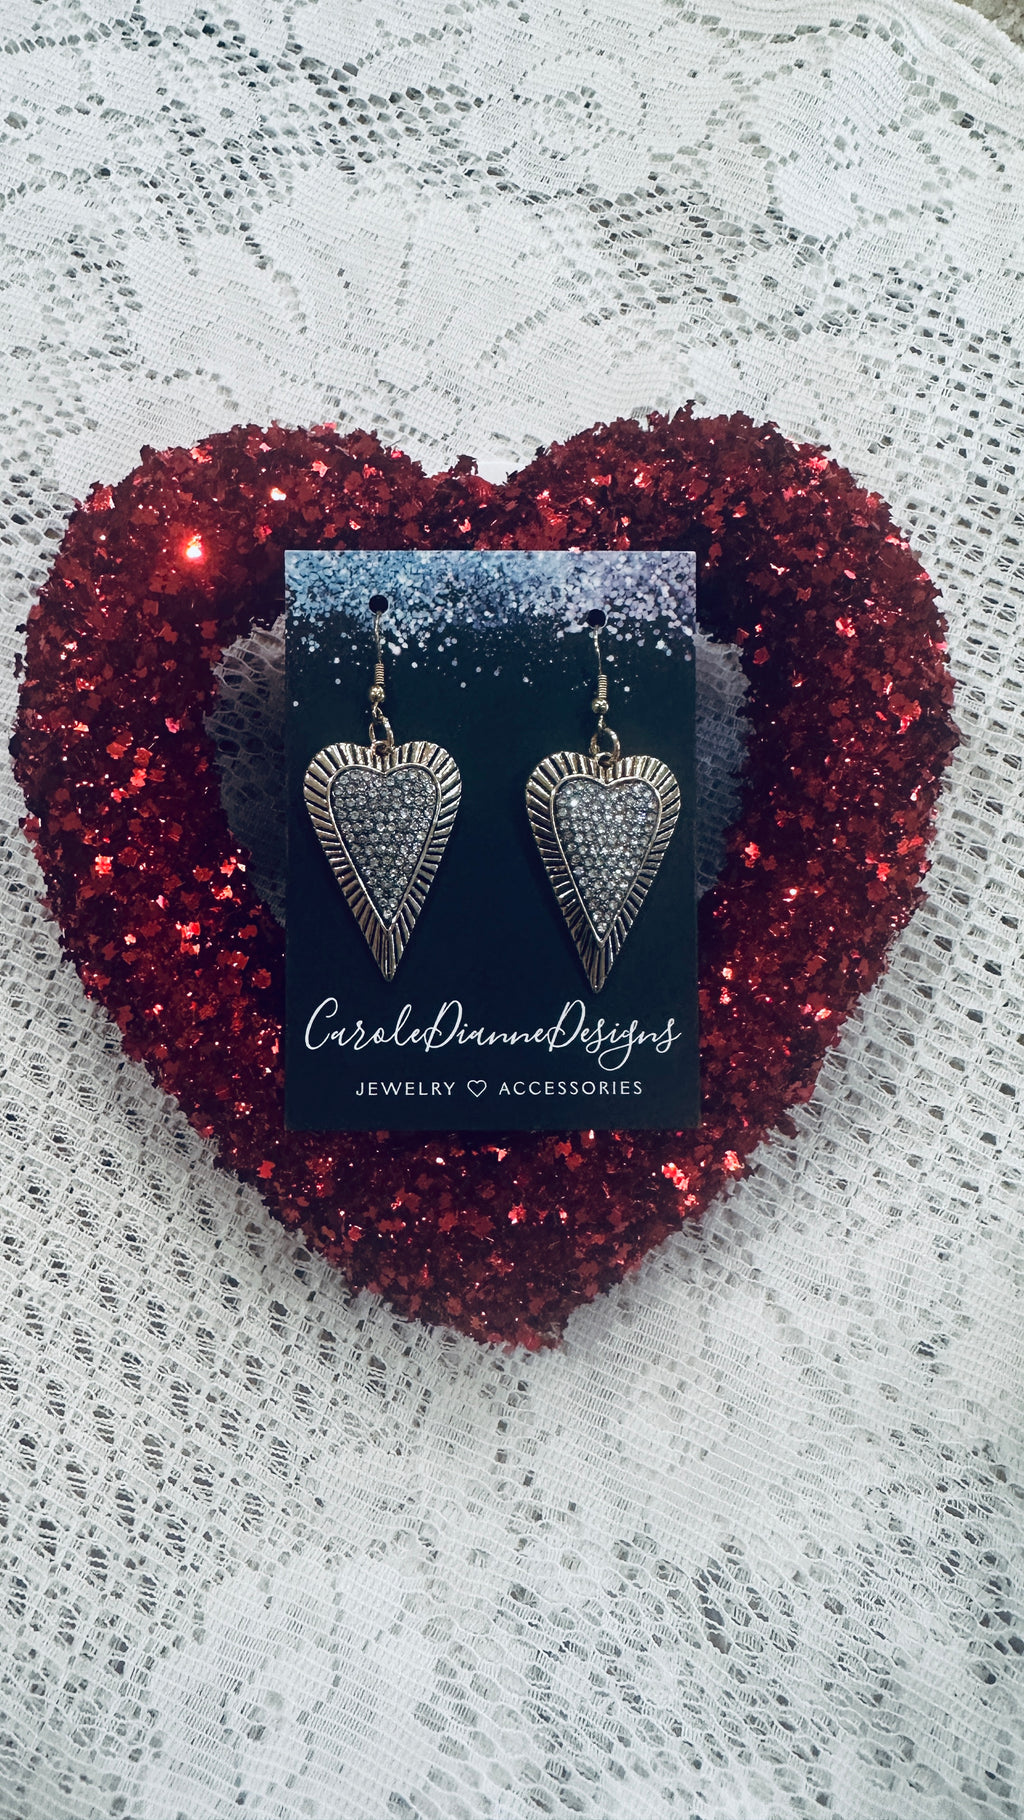 Oblong Rhinestone Heart Earrings Framed in Gold